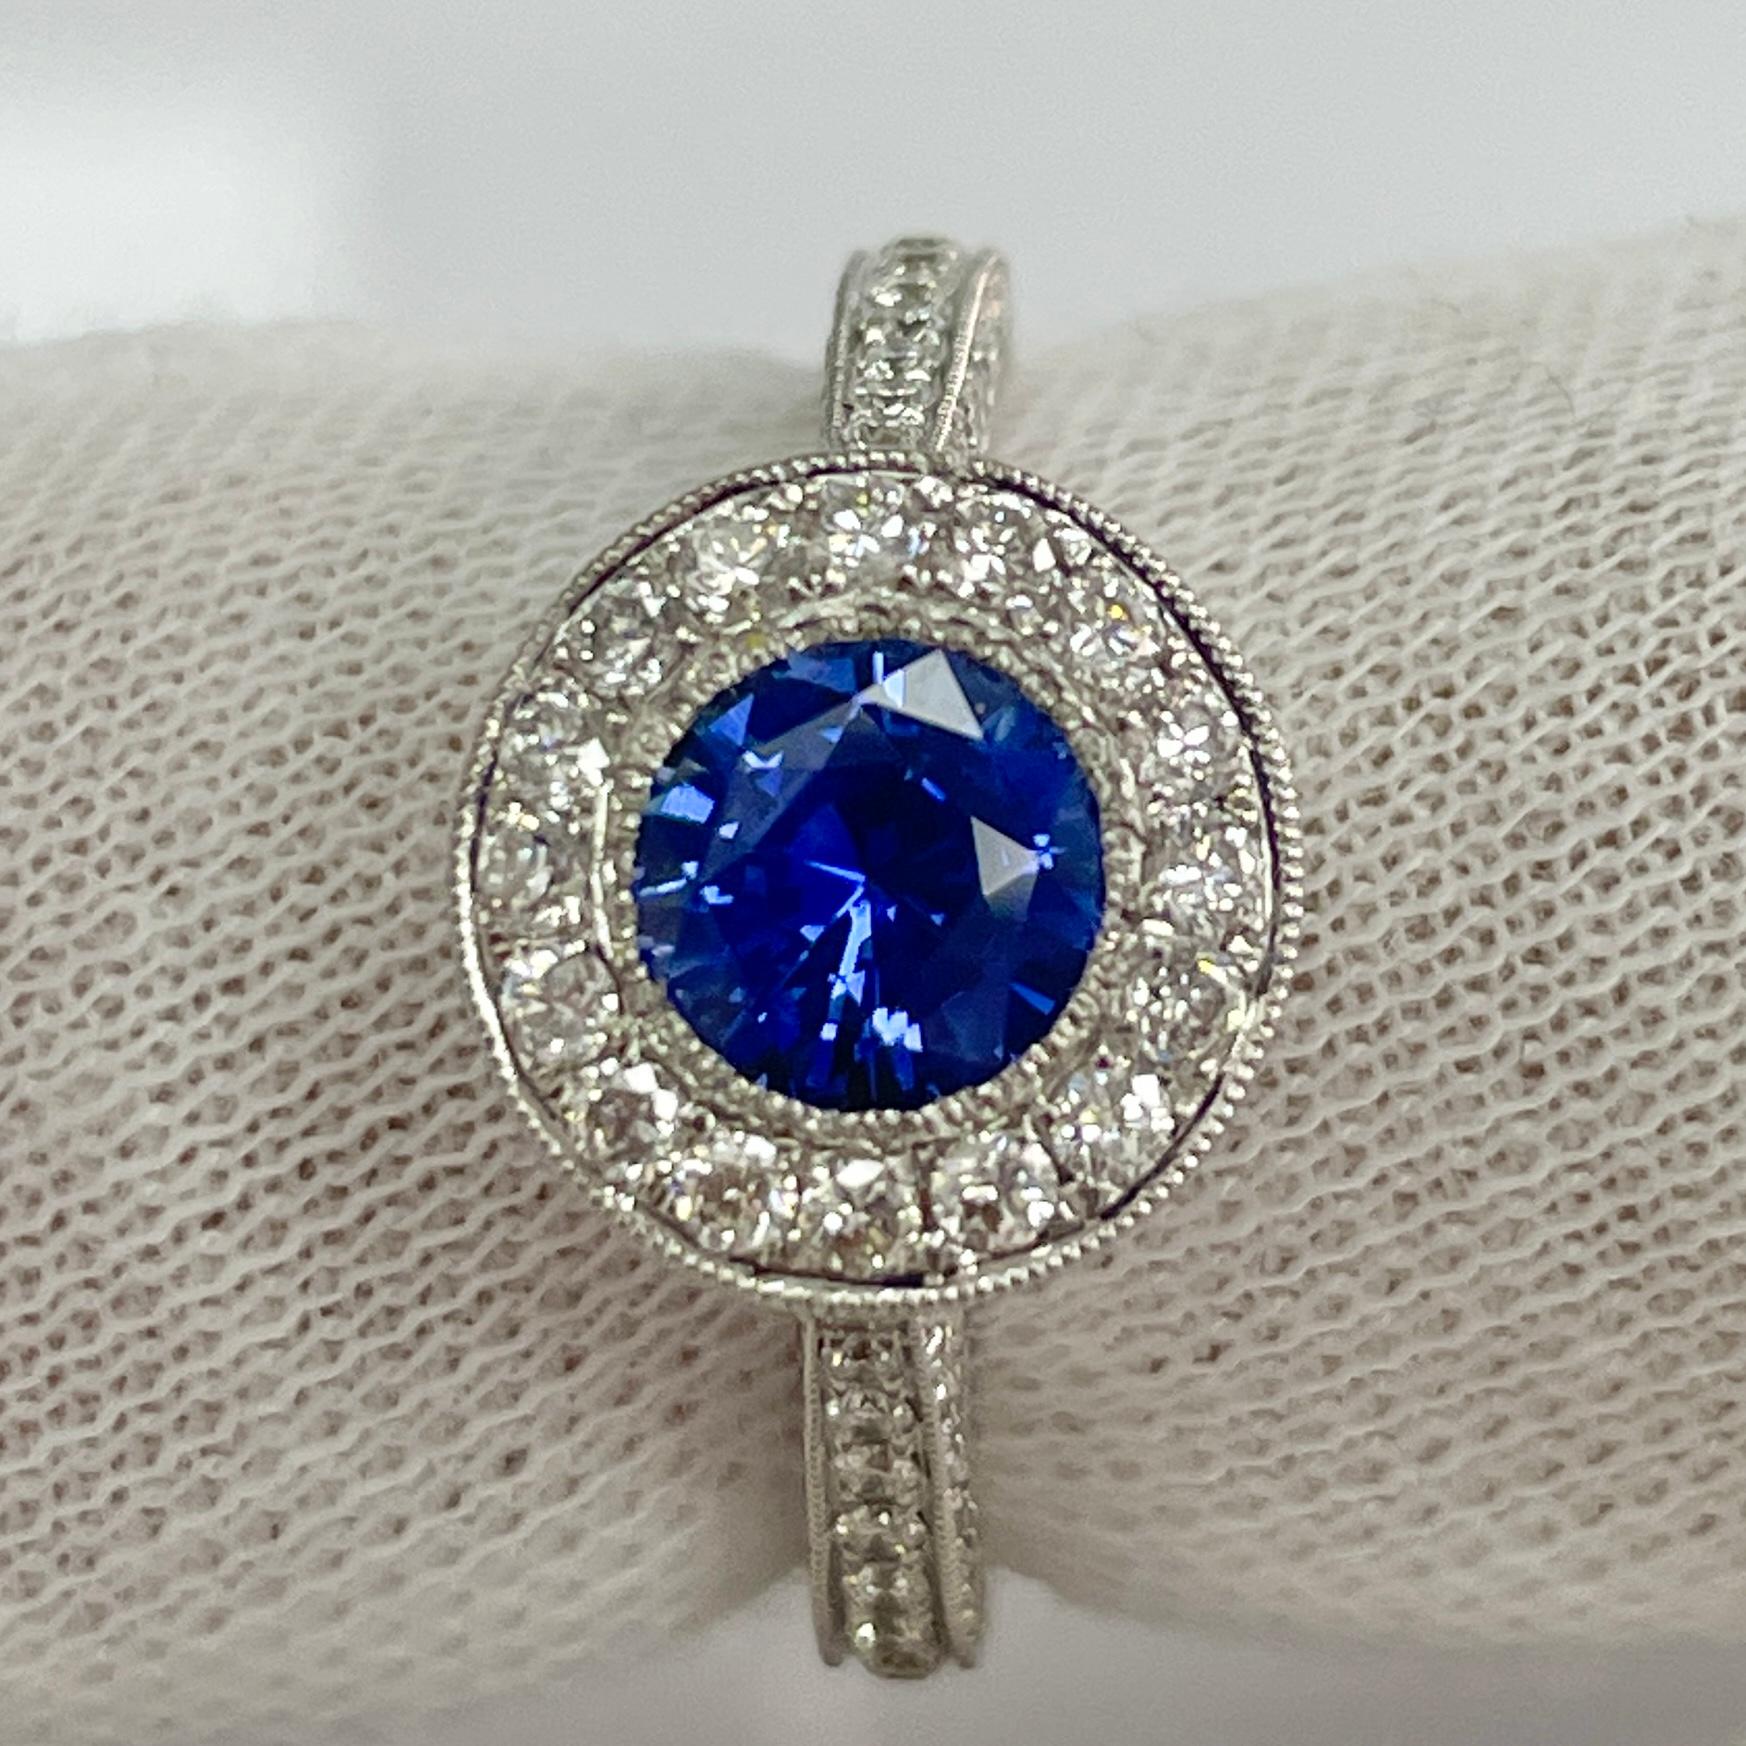 Dieser Ring hat einen zartblauen, aber sehr voll gesättigten und lebendigen Saphir. Dieser Ring ist sehr elegant mit 18 Karat Weißgold und 1,05 Karat brillanten weißen Diamanten.